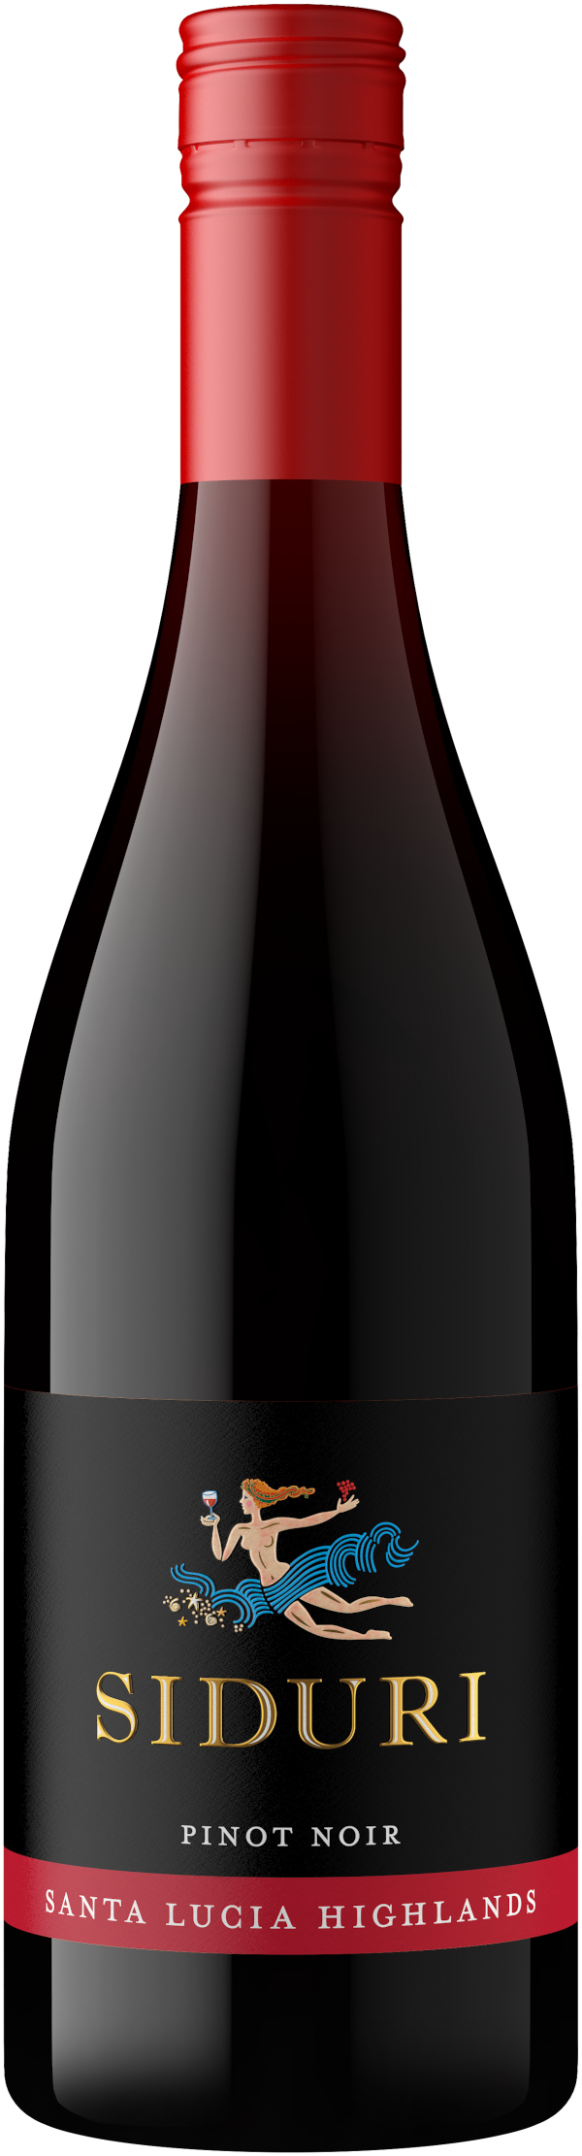 Siduri Pinot Noir Santa Lucia